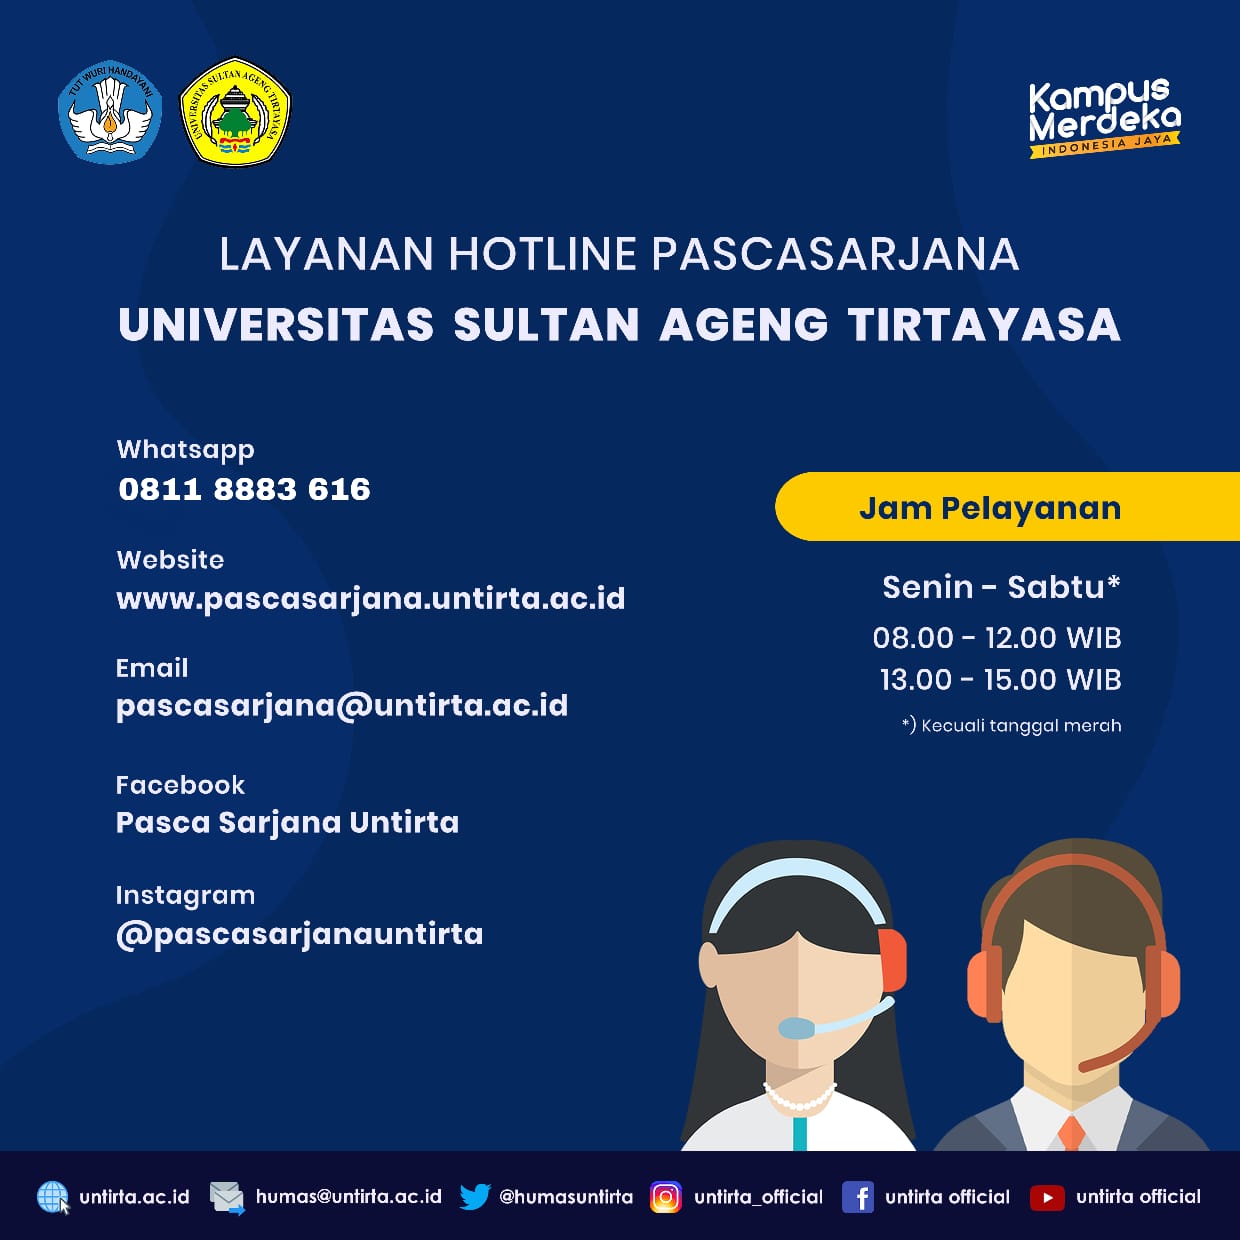 Layanan Hotline Pascasarjana Universitas Sultan Ageng Tirtayasa